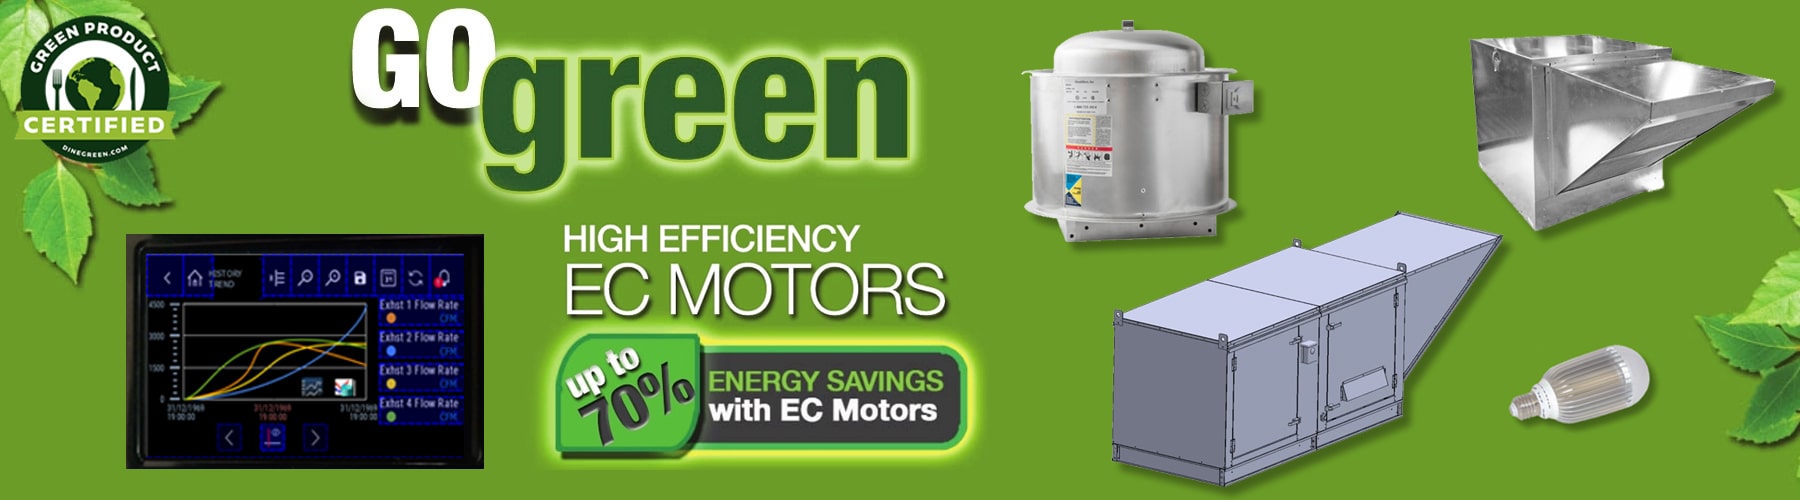 Go green with high efficiency exhaust ec motors